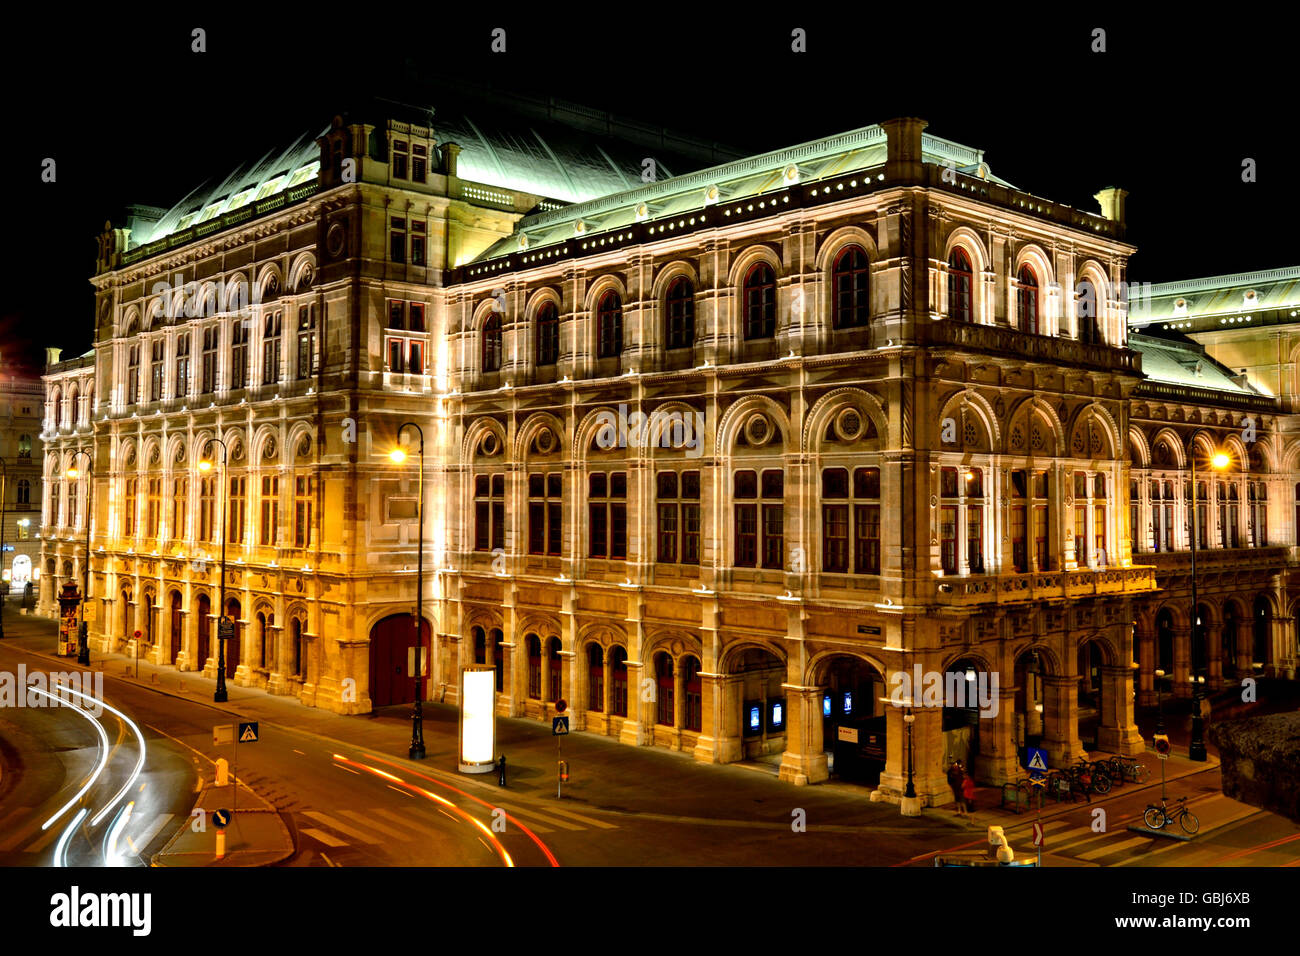 Wiener Staatsoper/ Vienna State opera at night Stock Photo